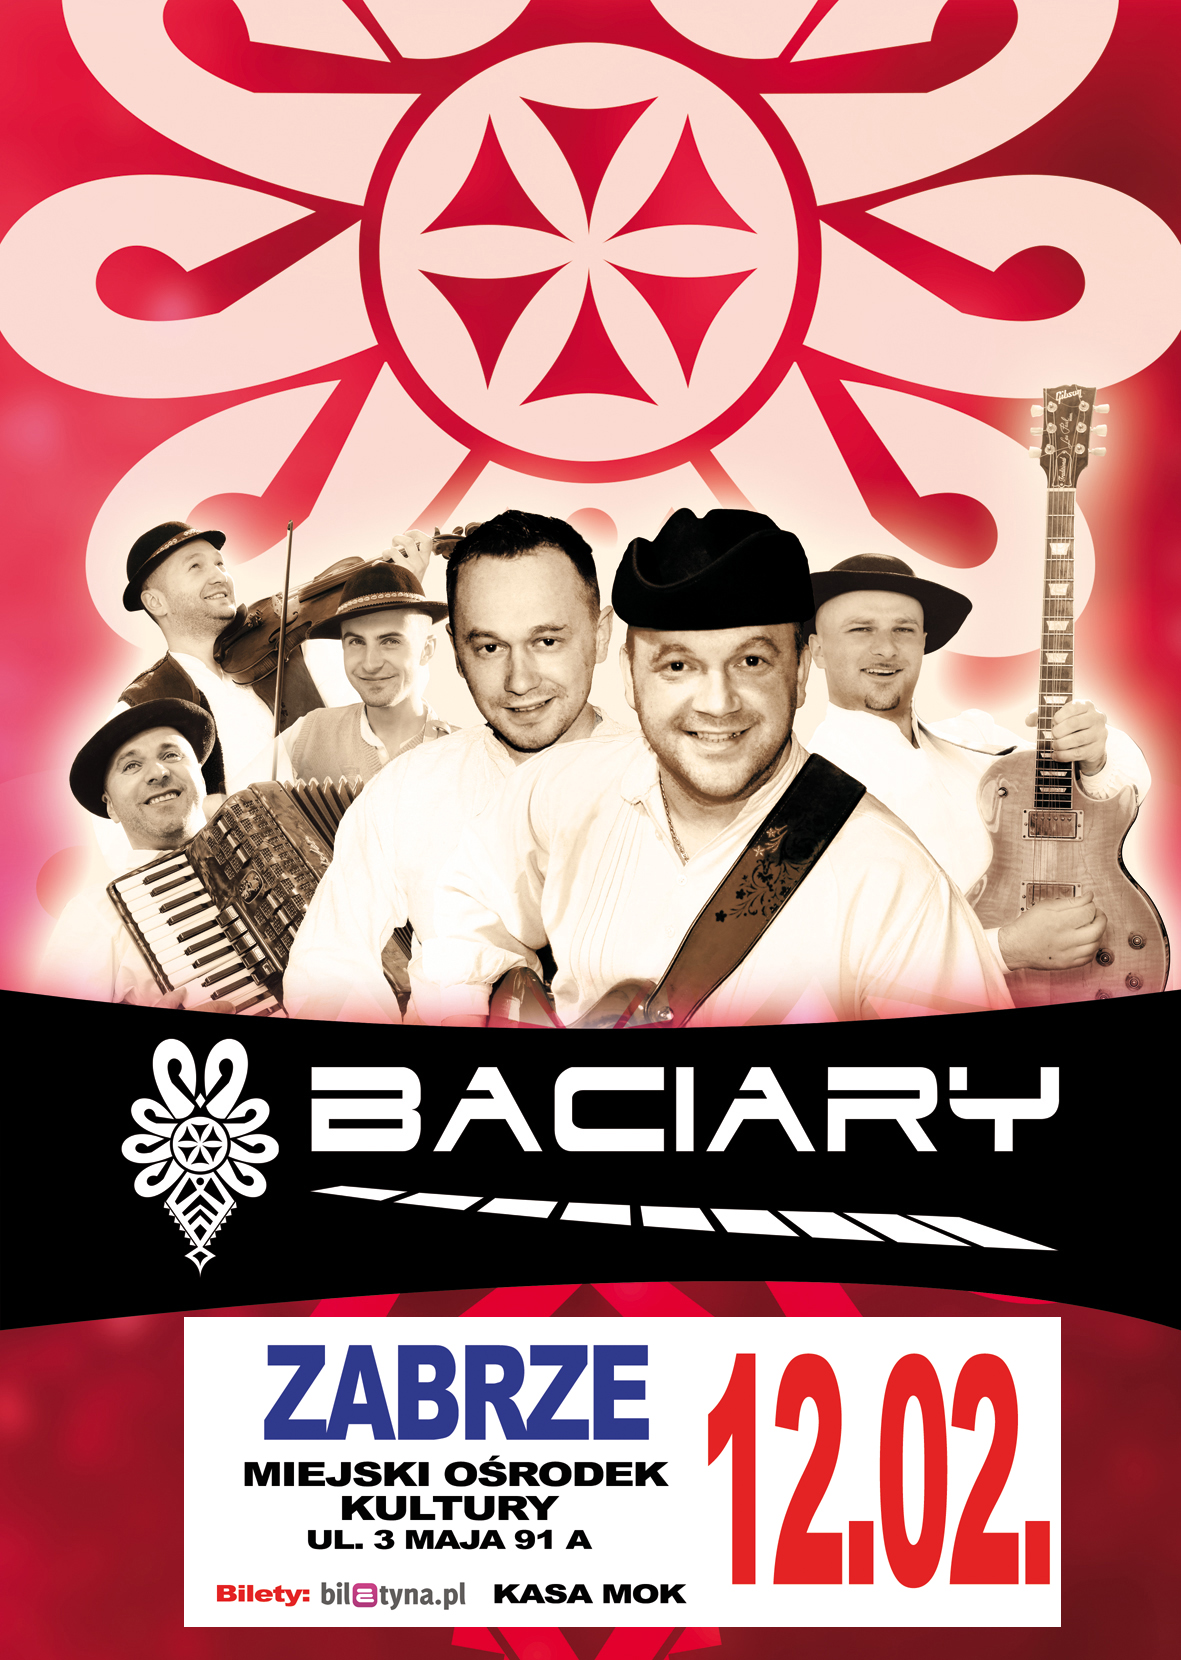 czerwony plakat promujący koncert zespołu Baciary z portretami wykonawców